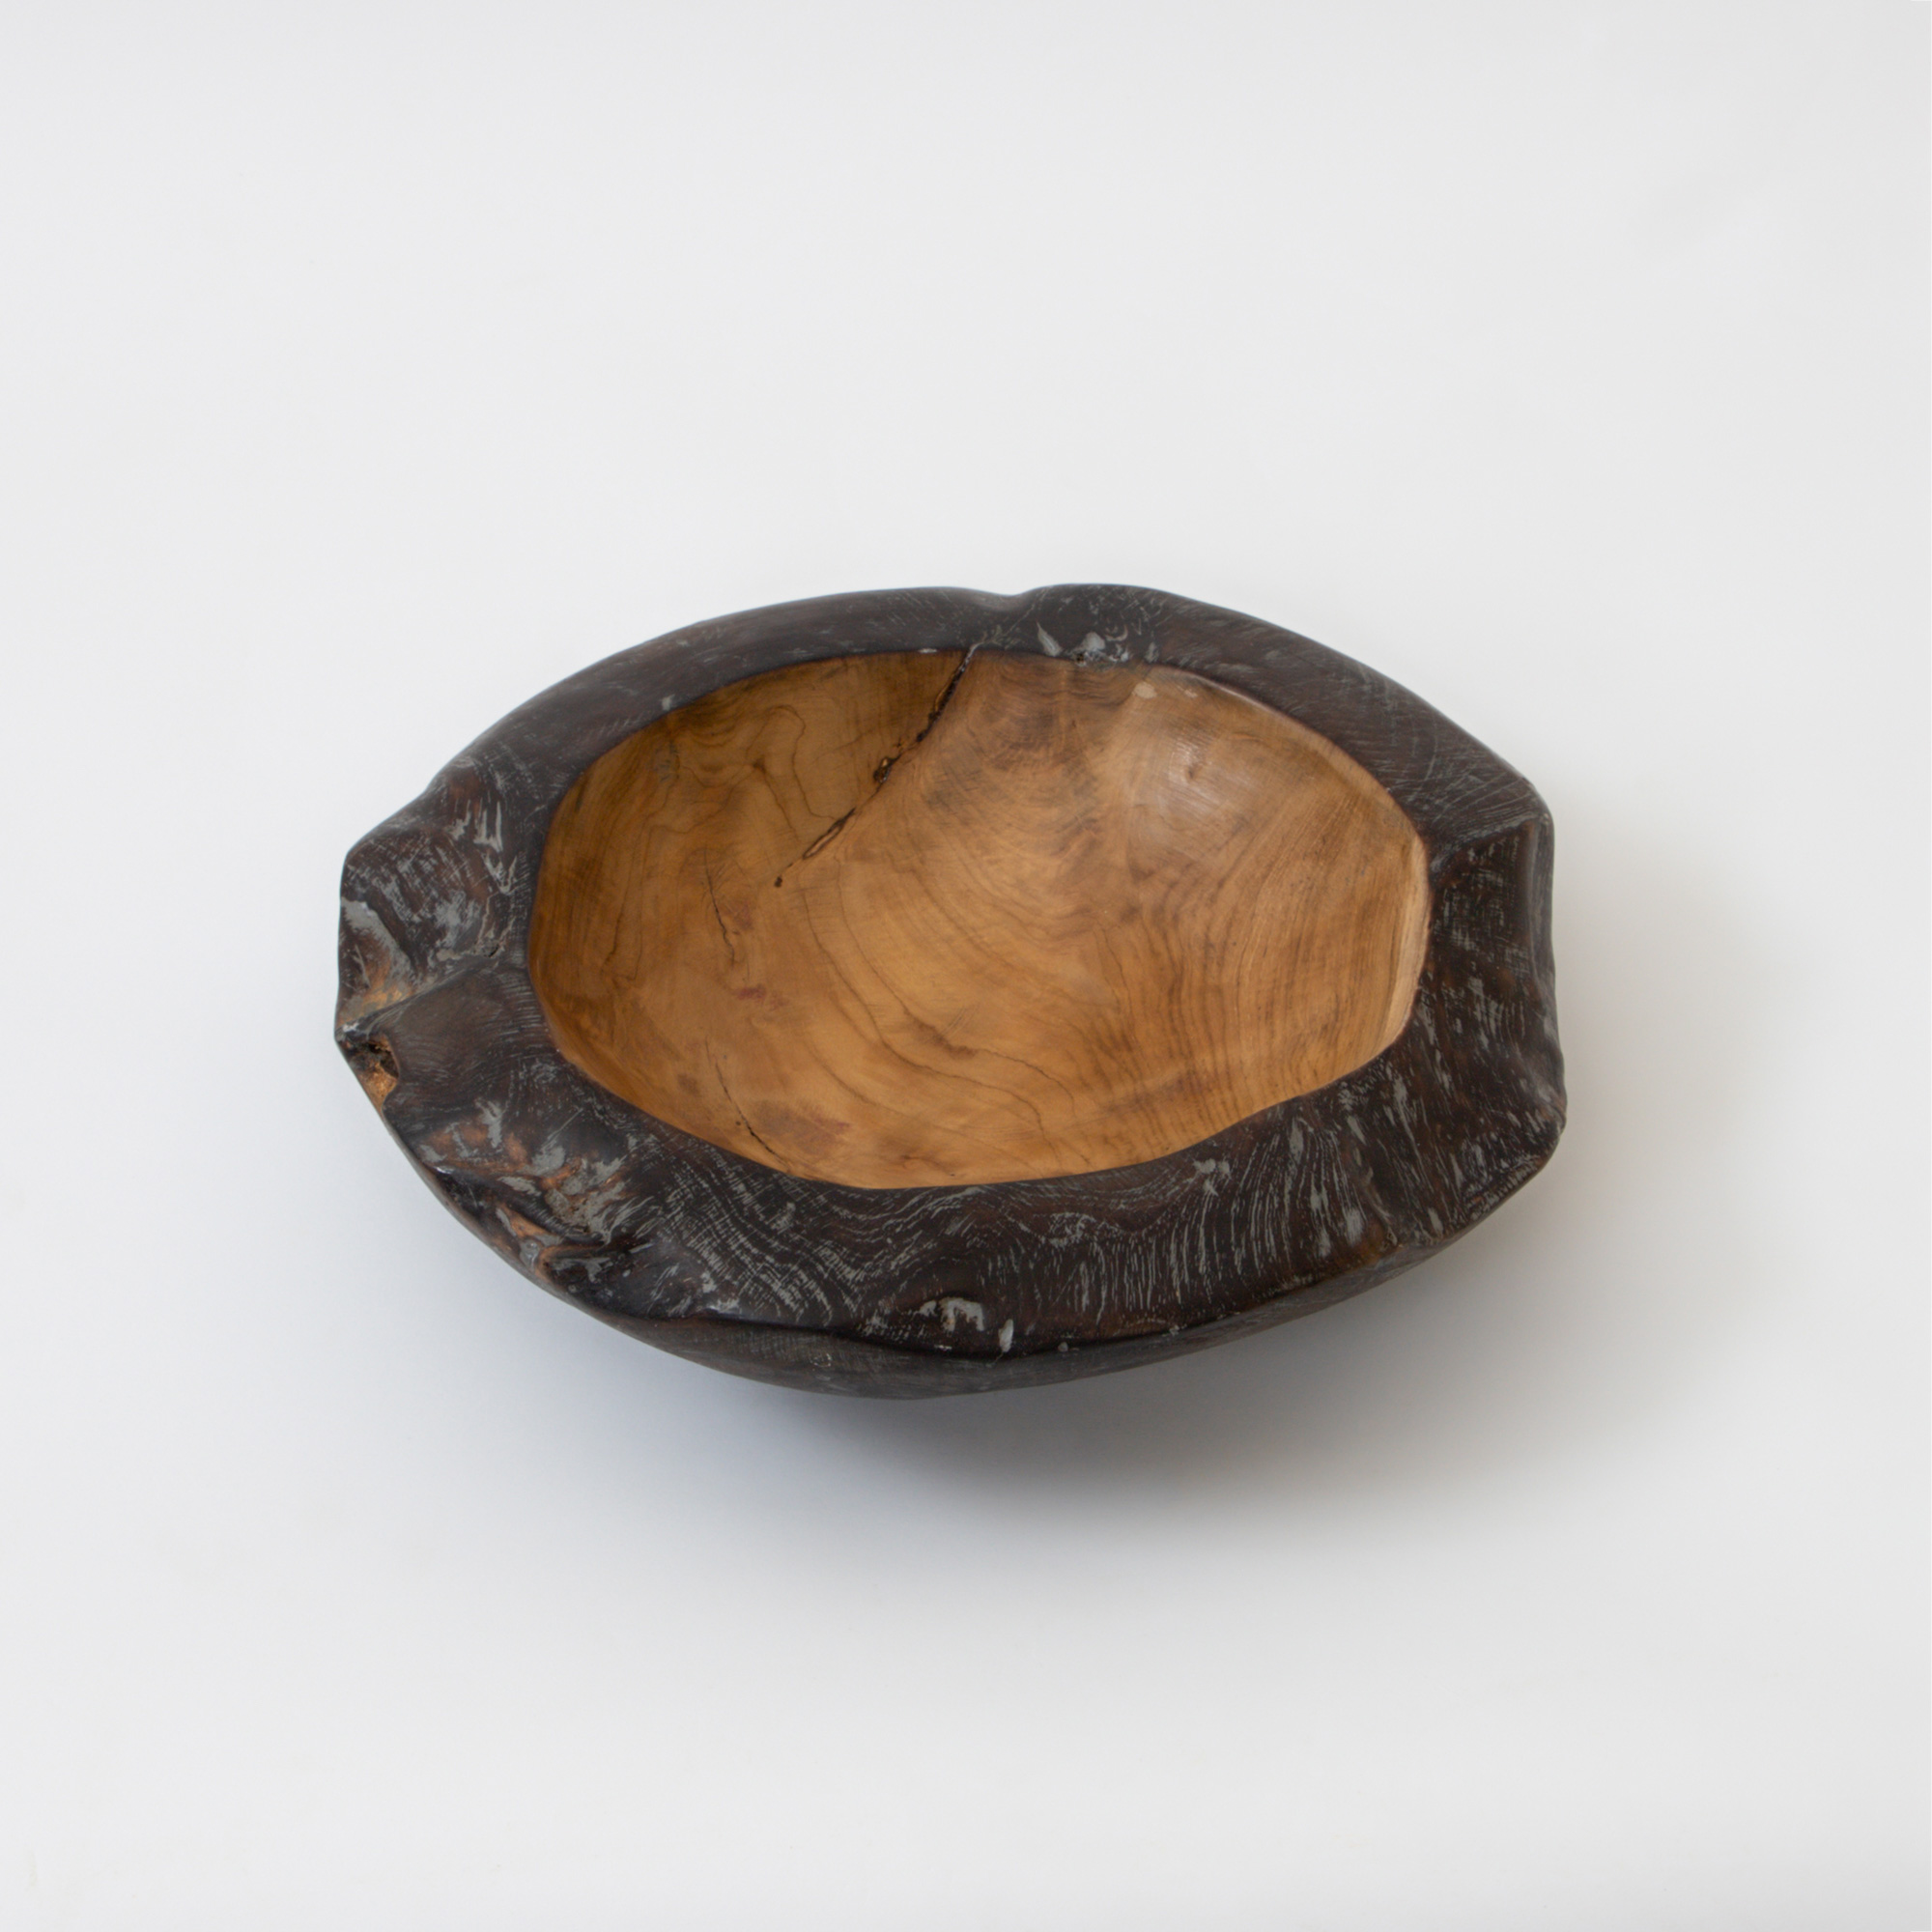 Cairo Ebony Wooden Bowl - Large